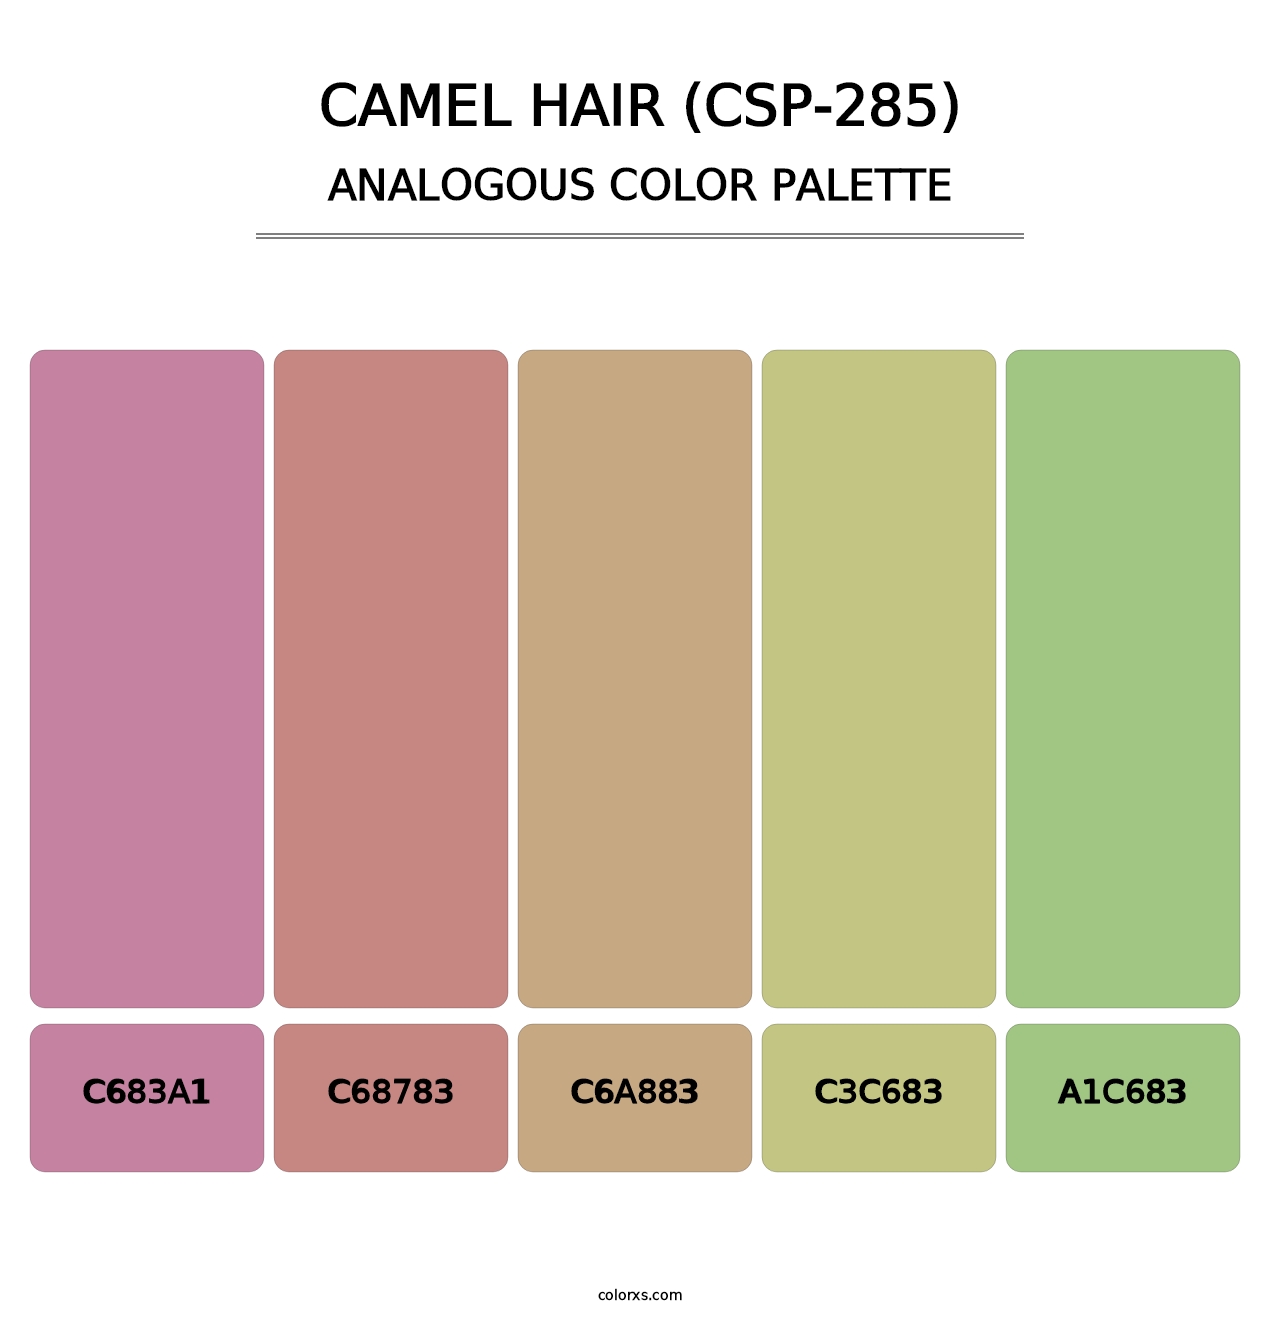 Camel Hair (CSP-285) - Analogous Color Palette